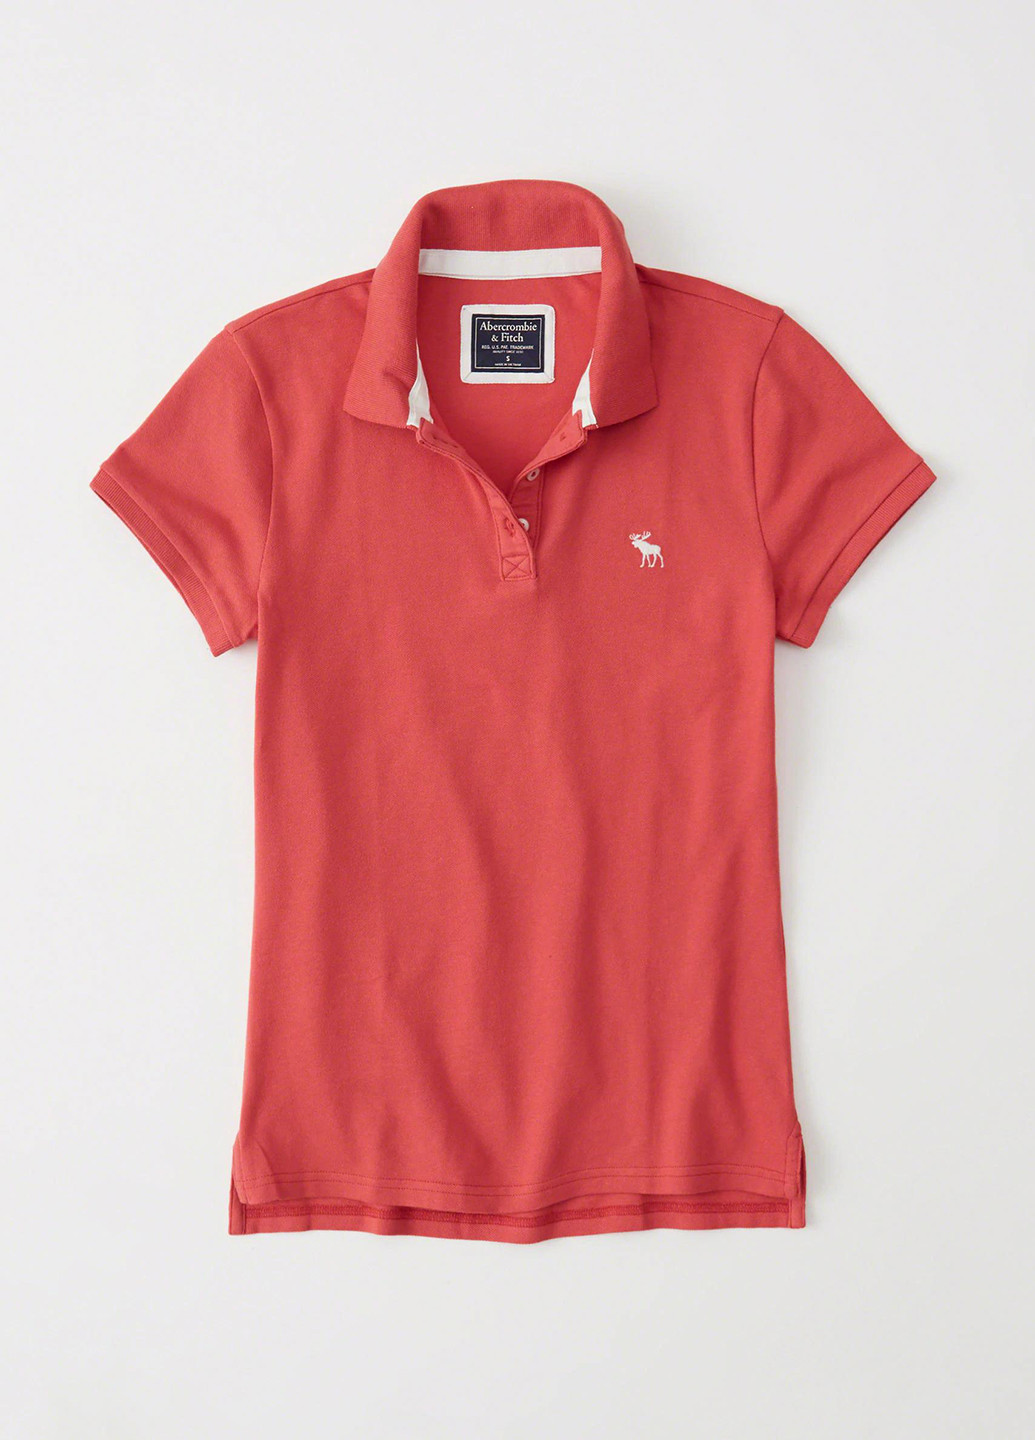 Красная женская футболка-поло Abercrombie & Fitch однотонная